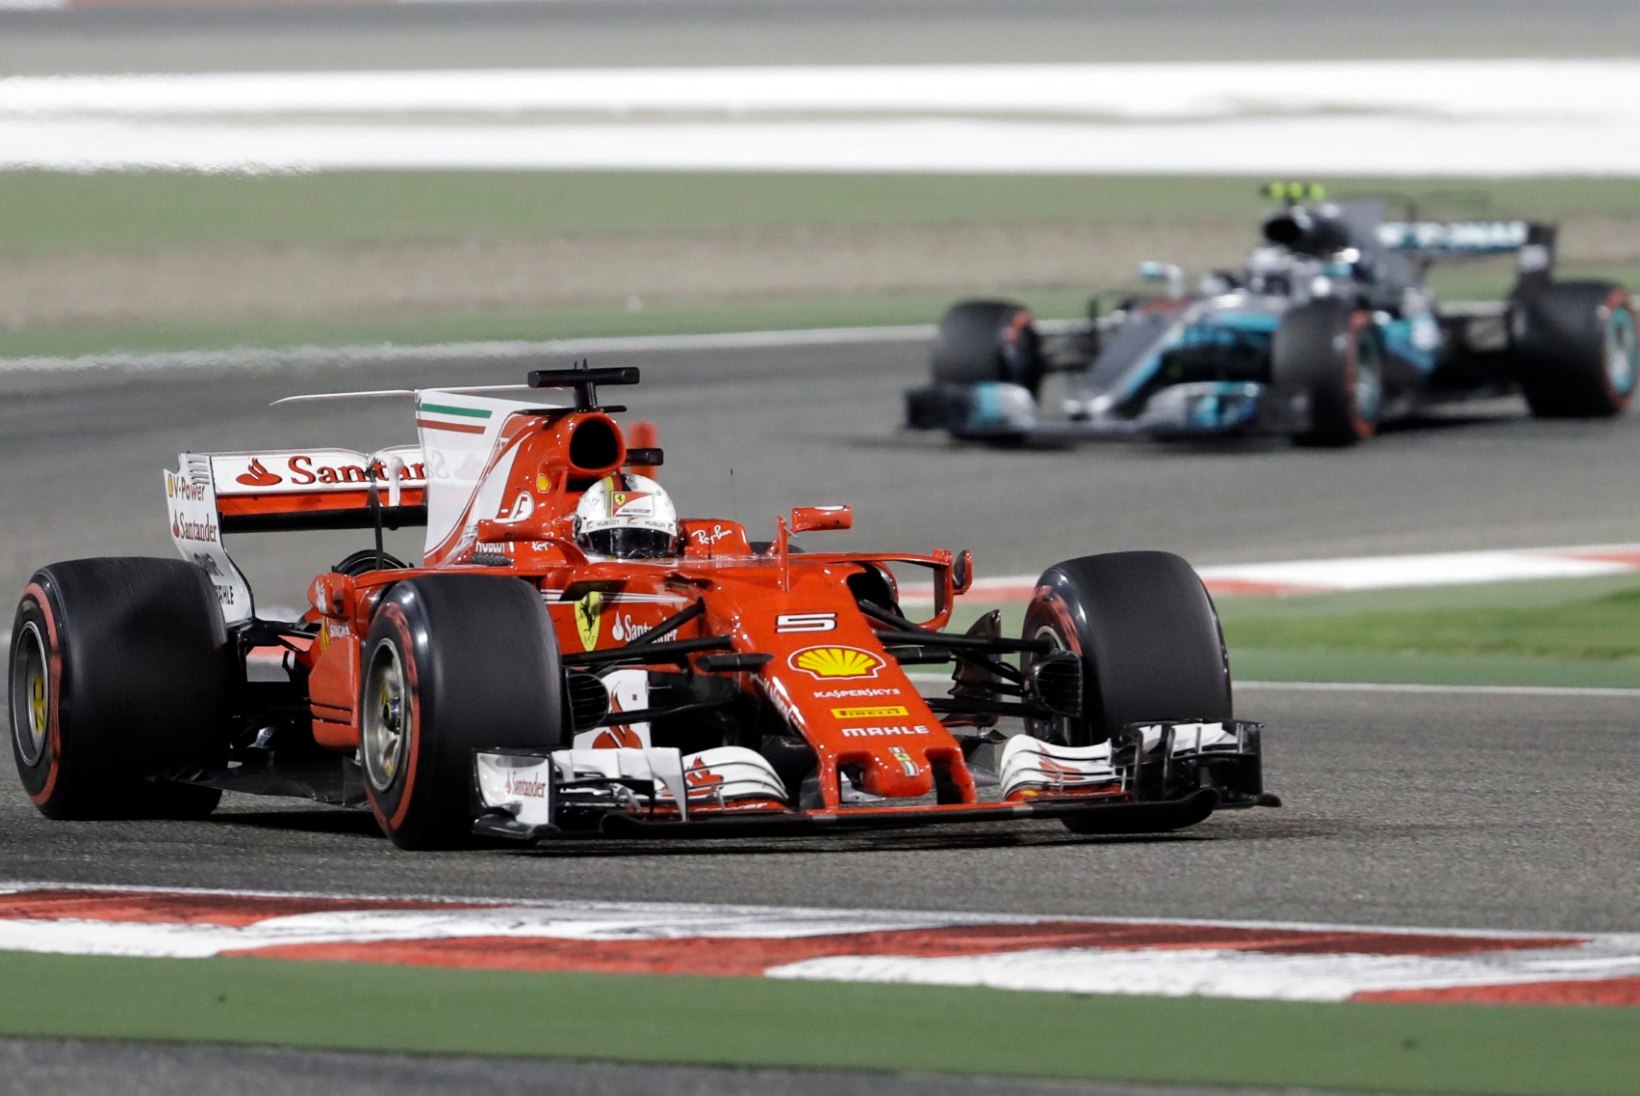 NII SEE JUHTUS | Bahreini GP: Sebastian Vettel võitis, parimalt stardikohalt alustanud Bottas leppis kolmanda kohaga